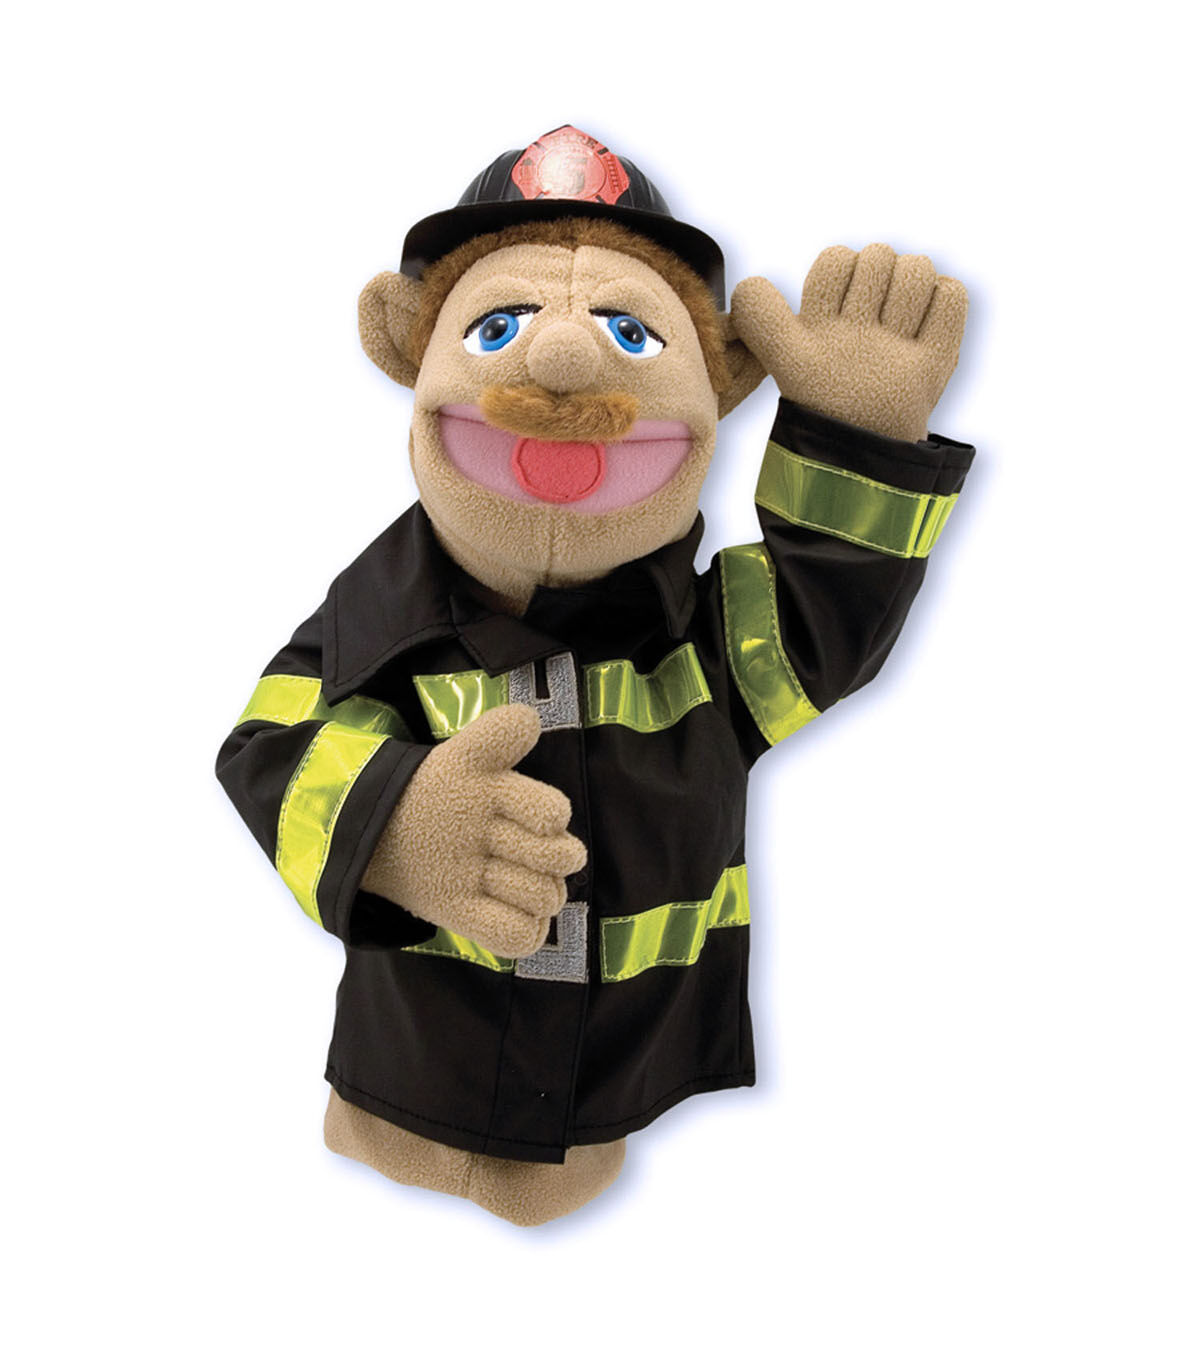 melissa and doug fireman costume